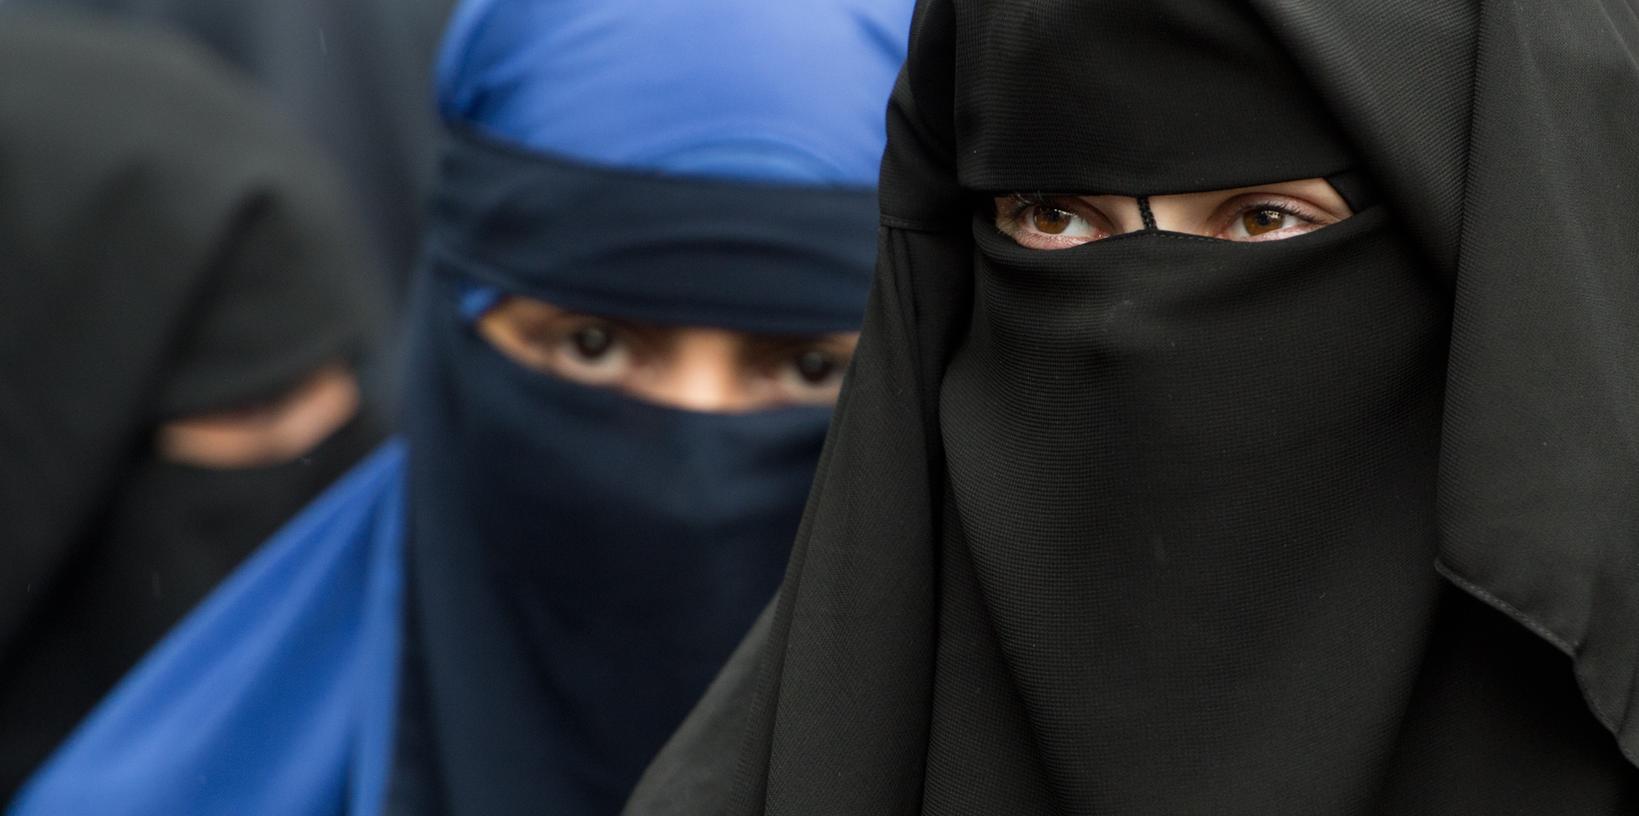 Kommentar: Darum ist die Burka ein Sicherheitsrisiko